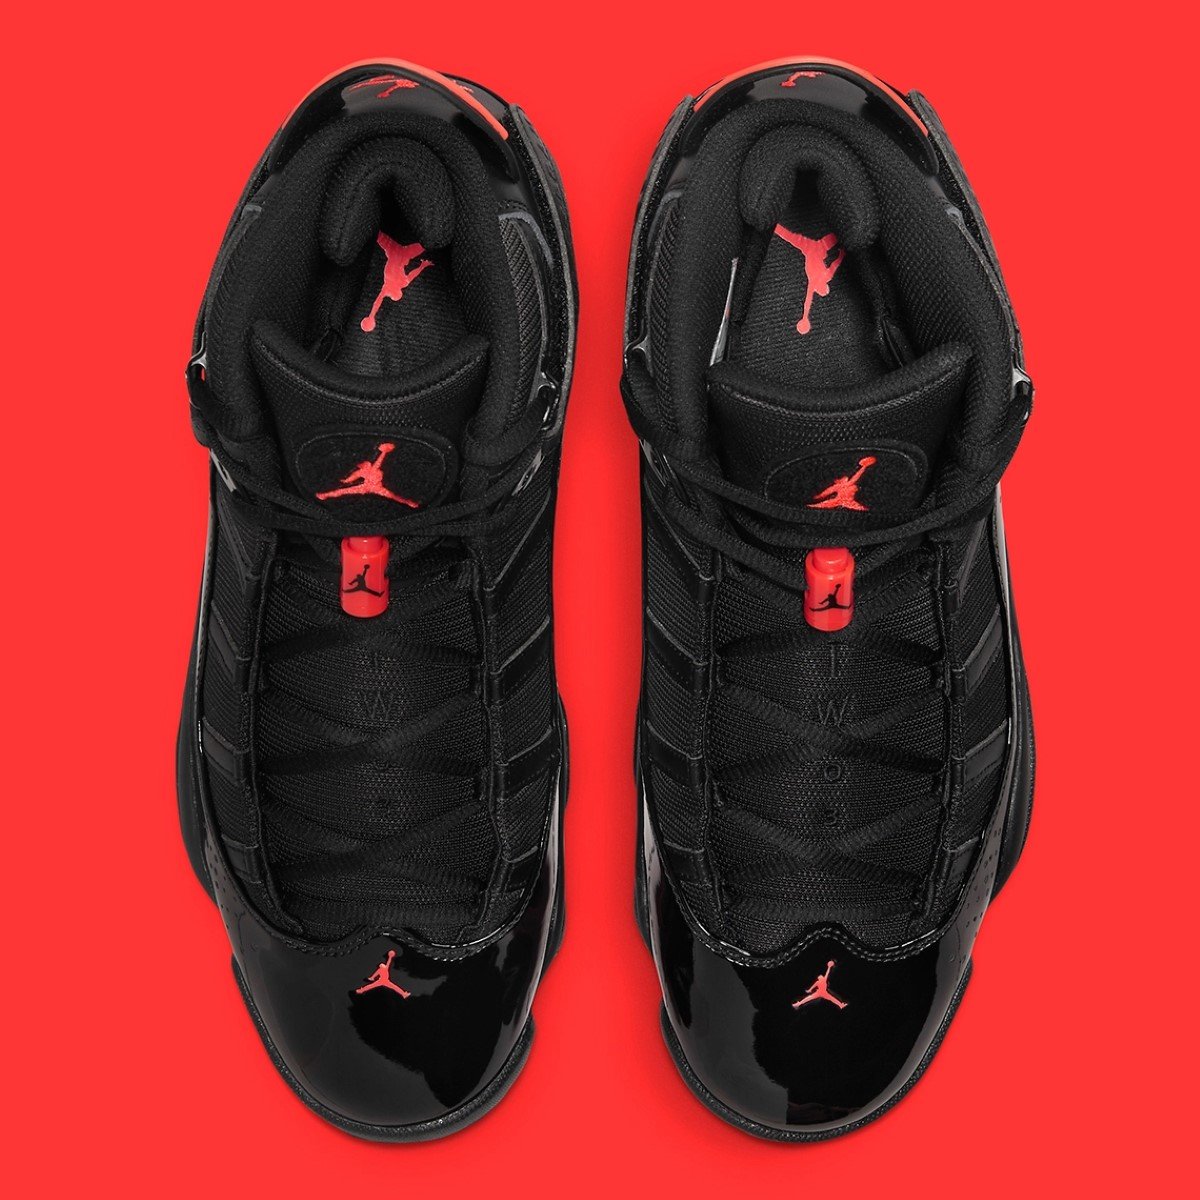 Jordan 6 Rings "Black Infrared"